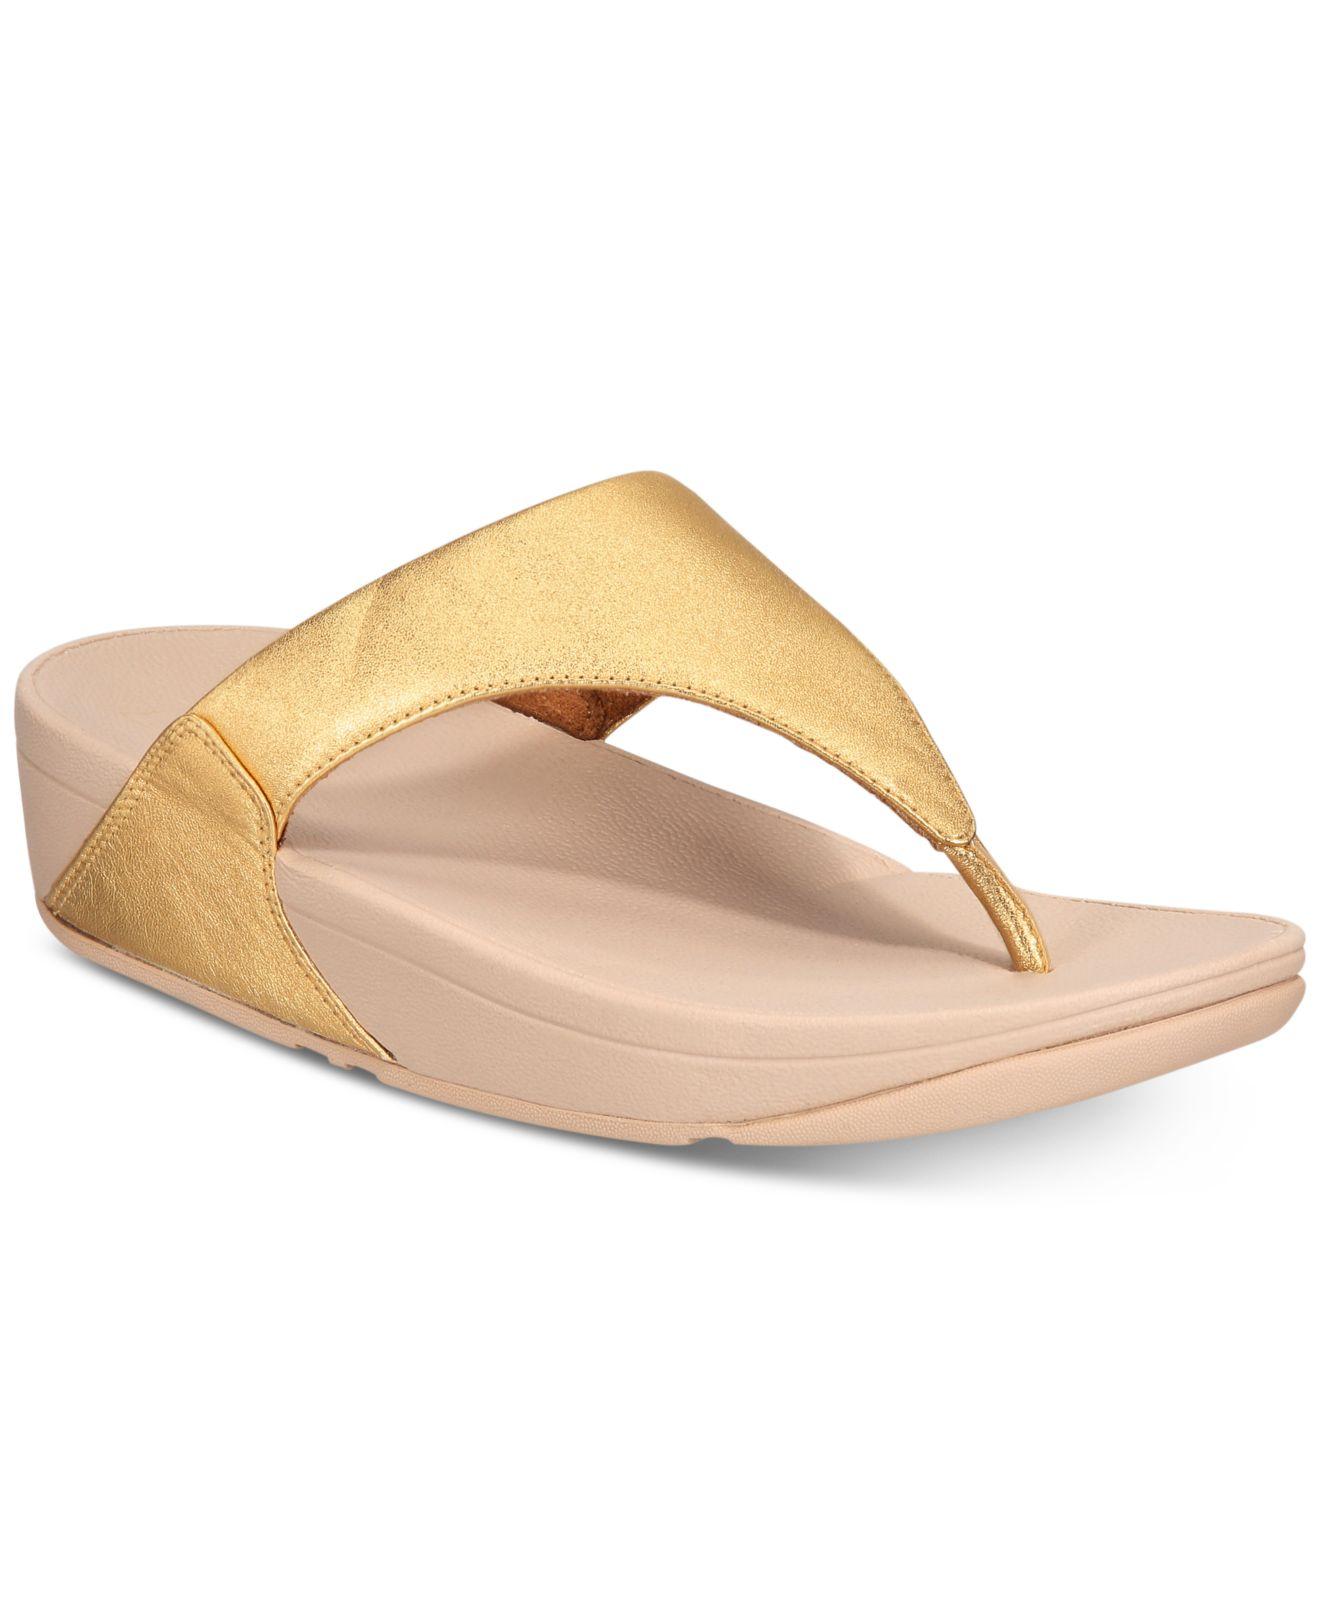 Fitflop Lulu Leather Toepost Flip-flop Sandals in Metallic - Lyst